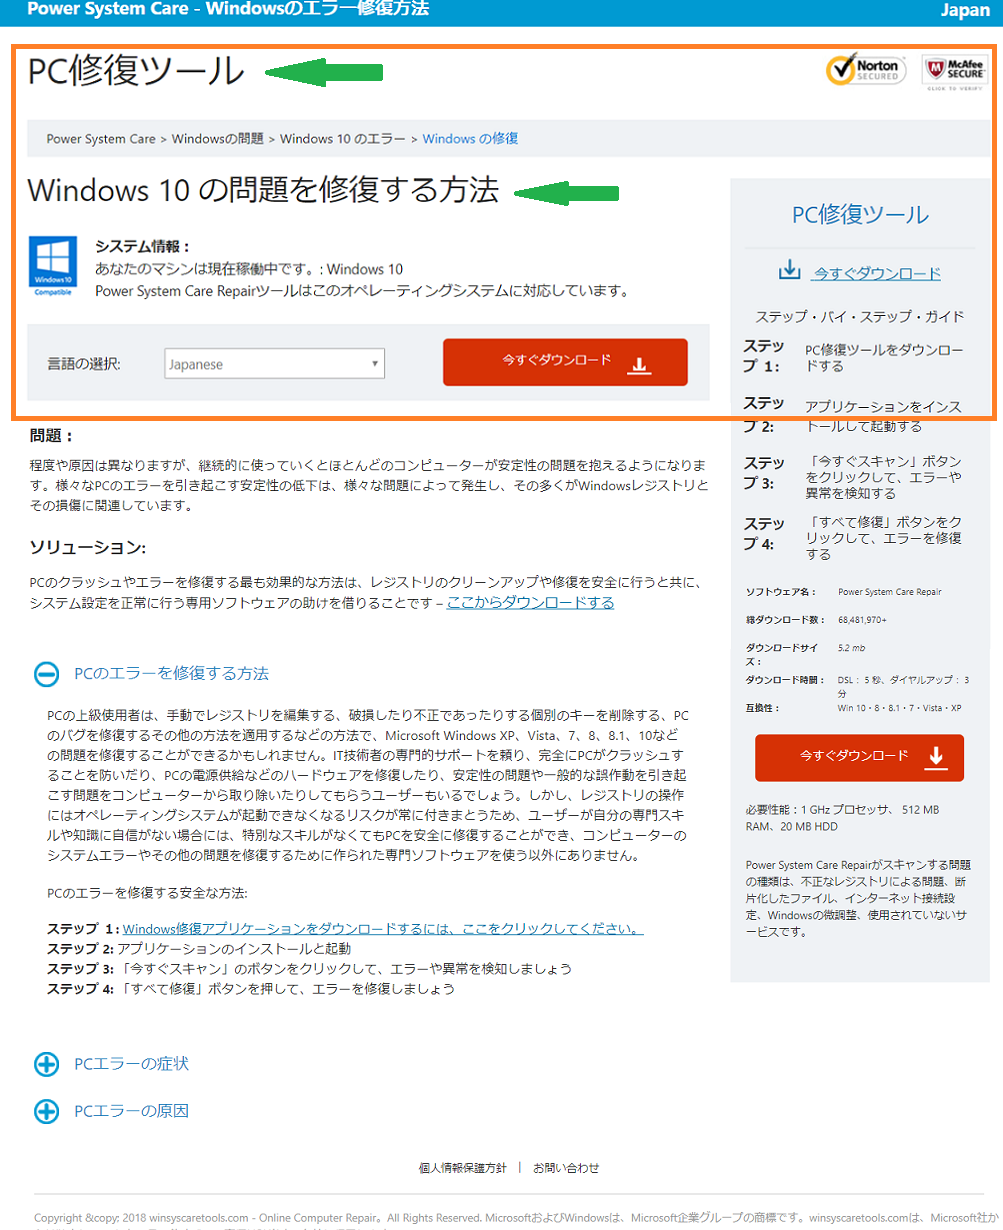 「【PC修復ツール】Windows10の問題を修復する方法」ページの実際の画像